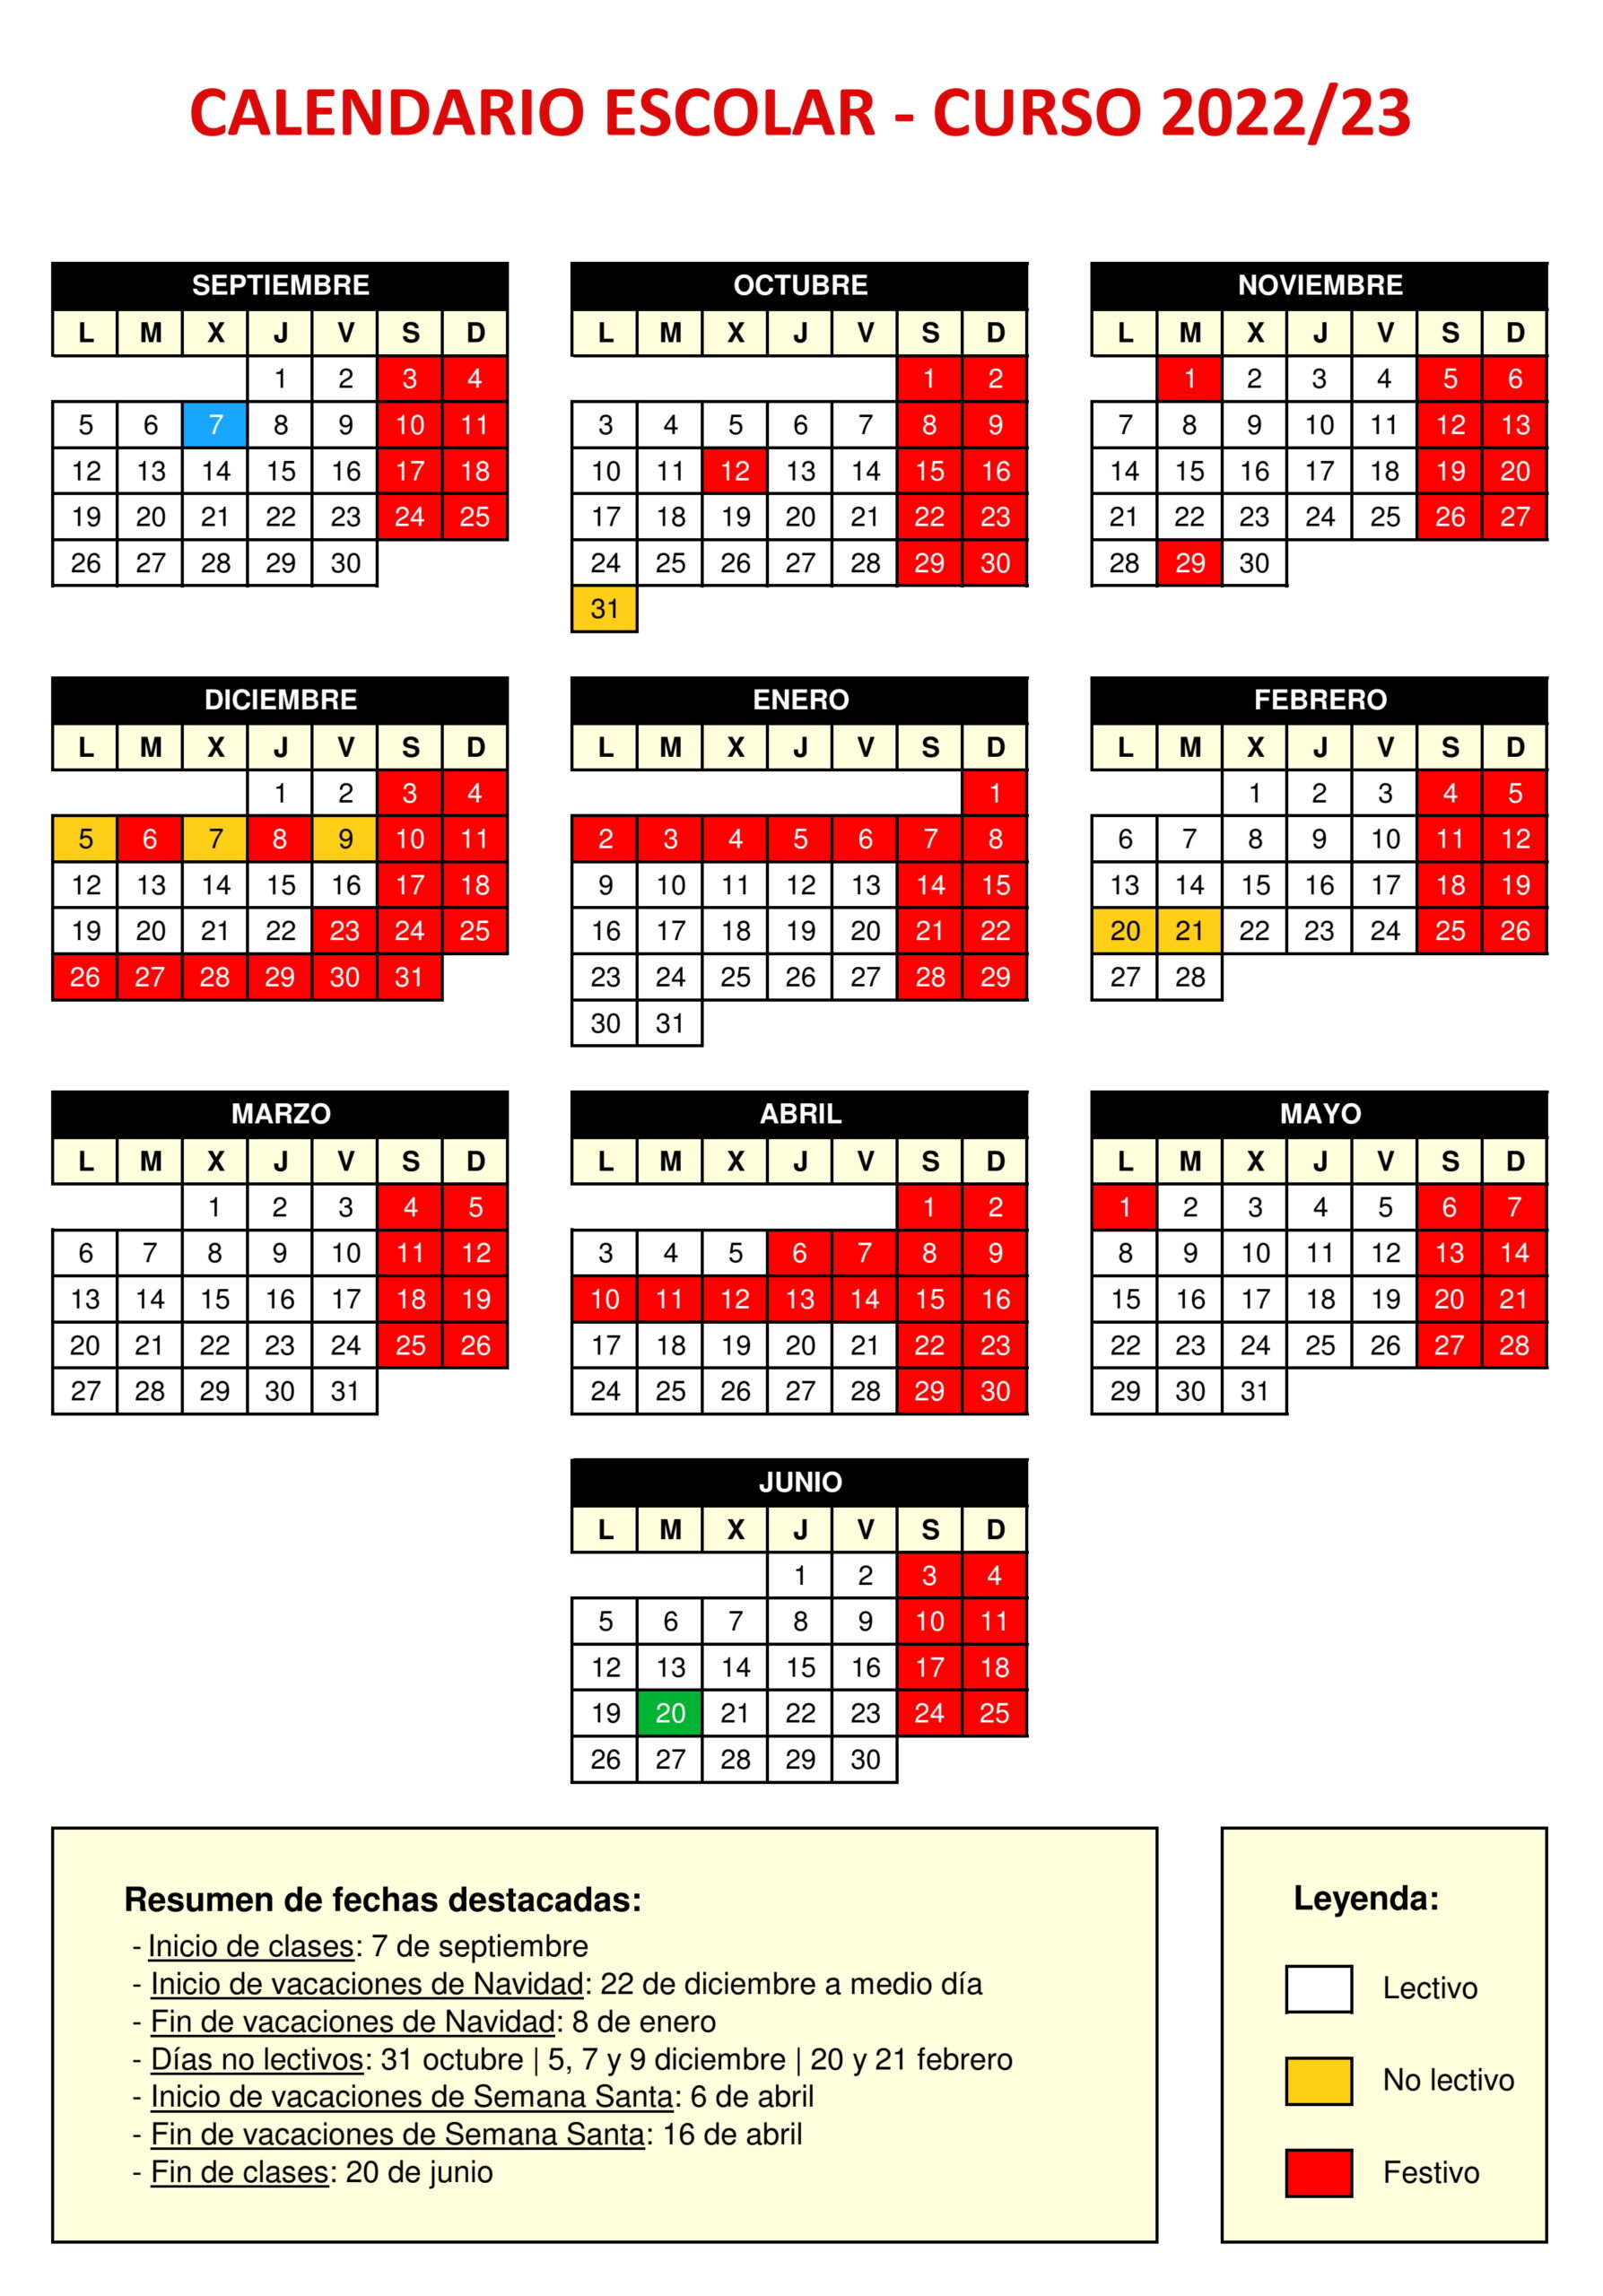 Calendario Escolar Curso 2022/23 y 2023/24 Colegio Sagrado Corazón